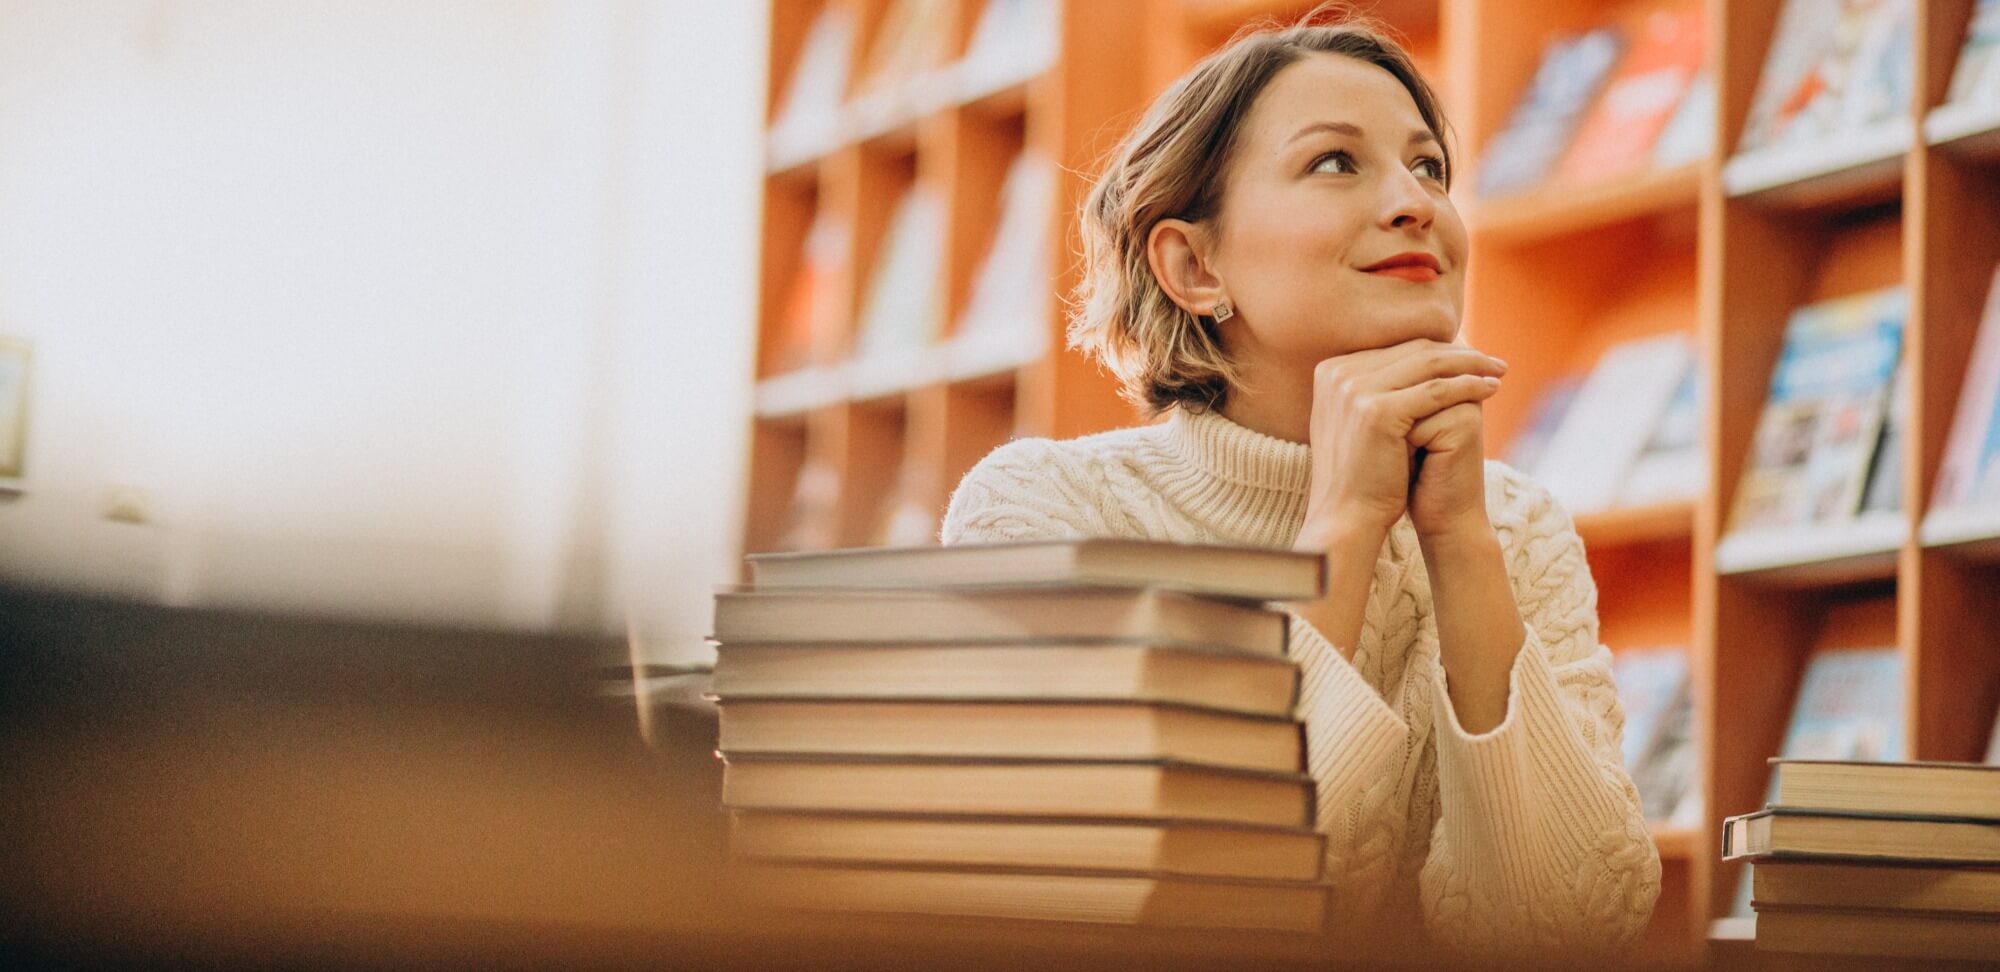 Ranking Enade: fotografia de uma mulher em uma biblioteca, apoiada em uma mesa e olhando para cima.